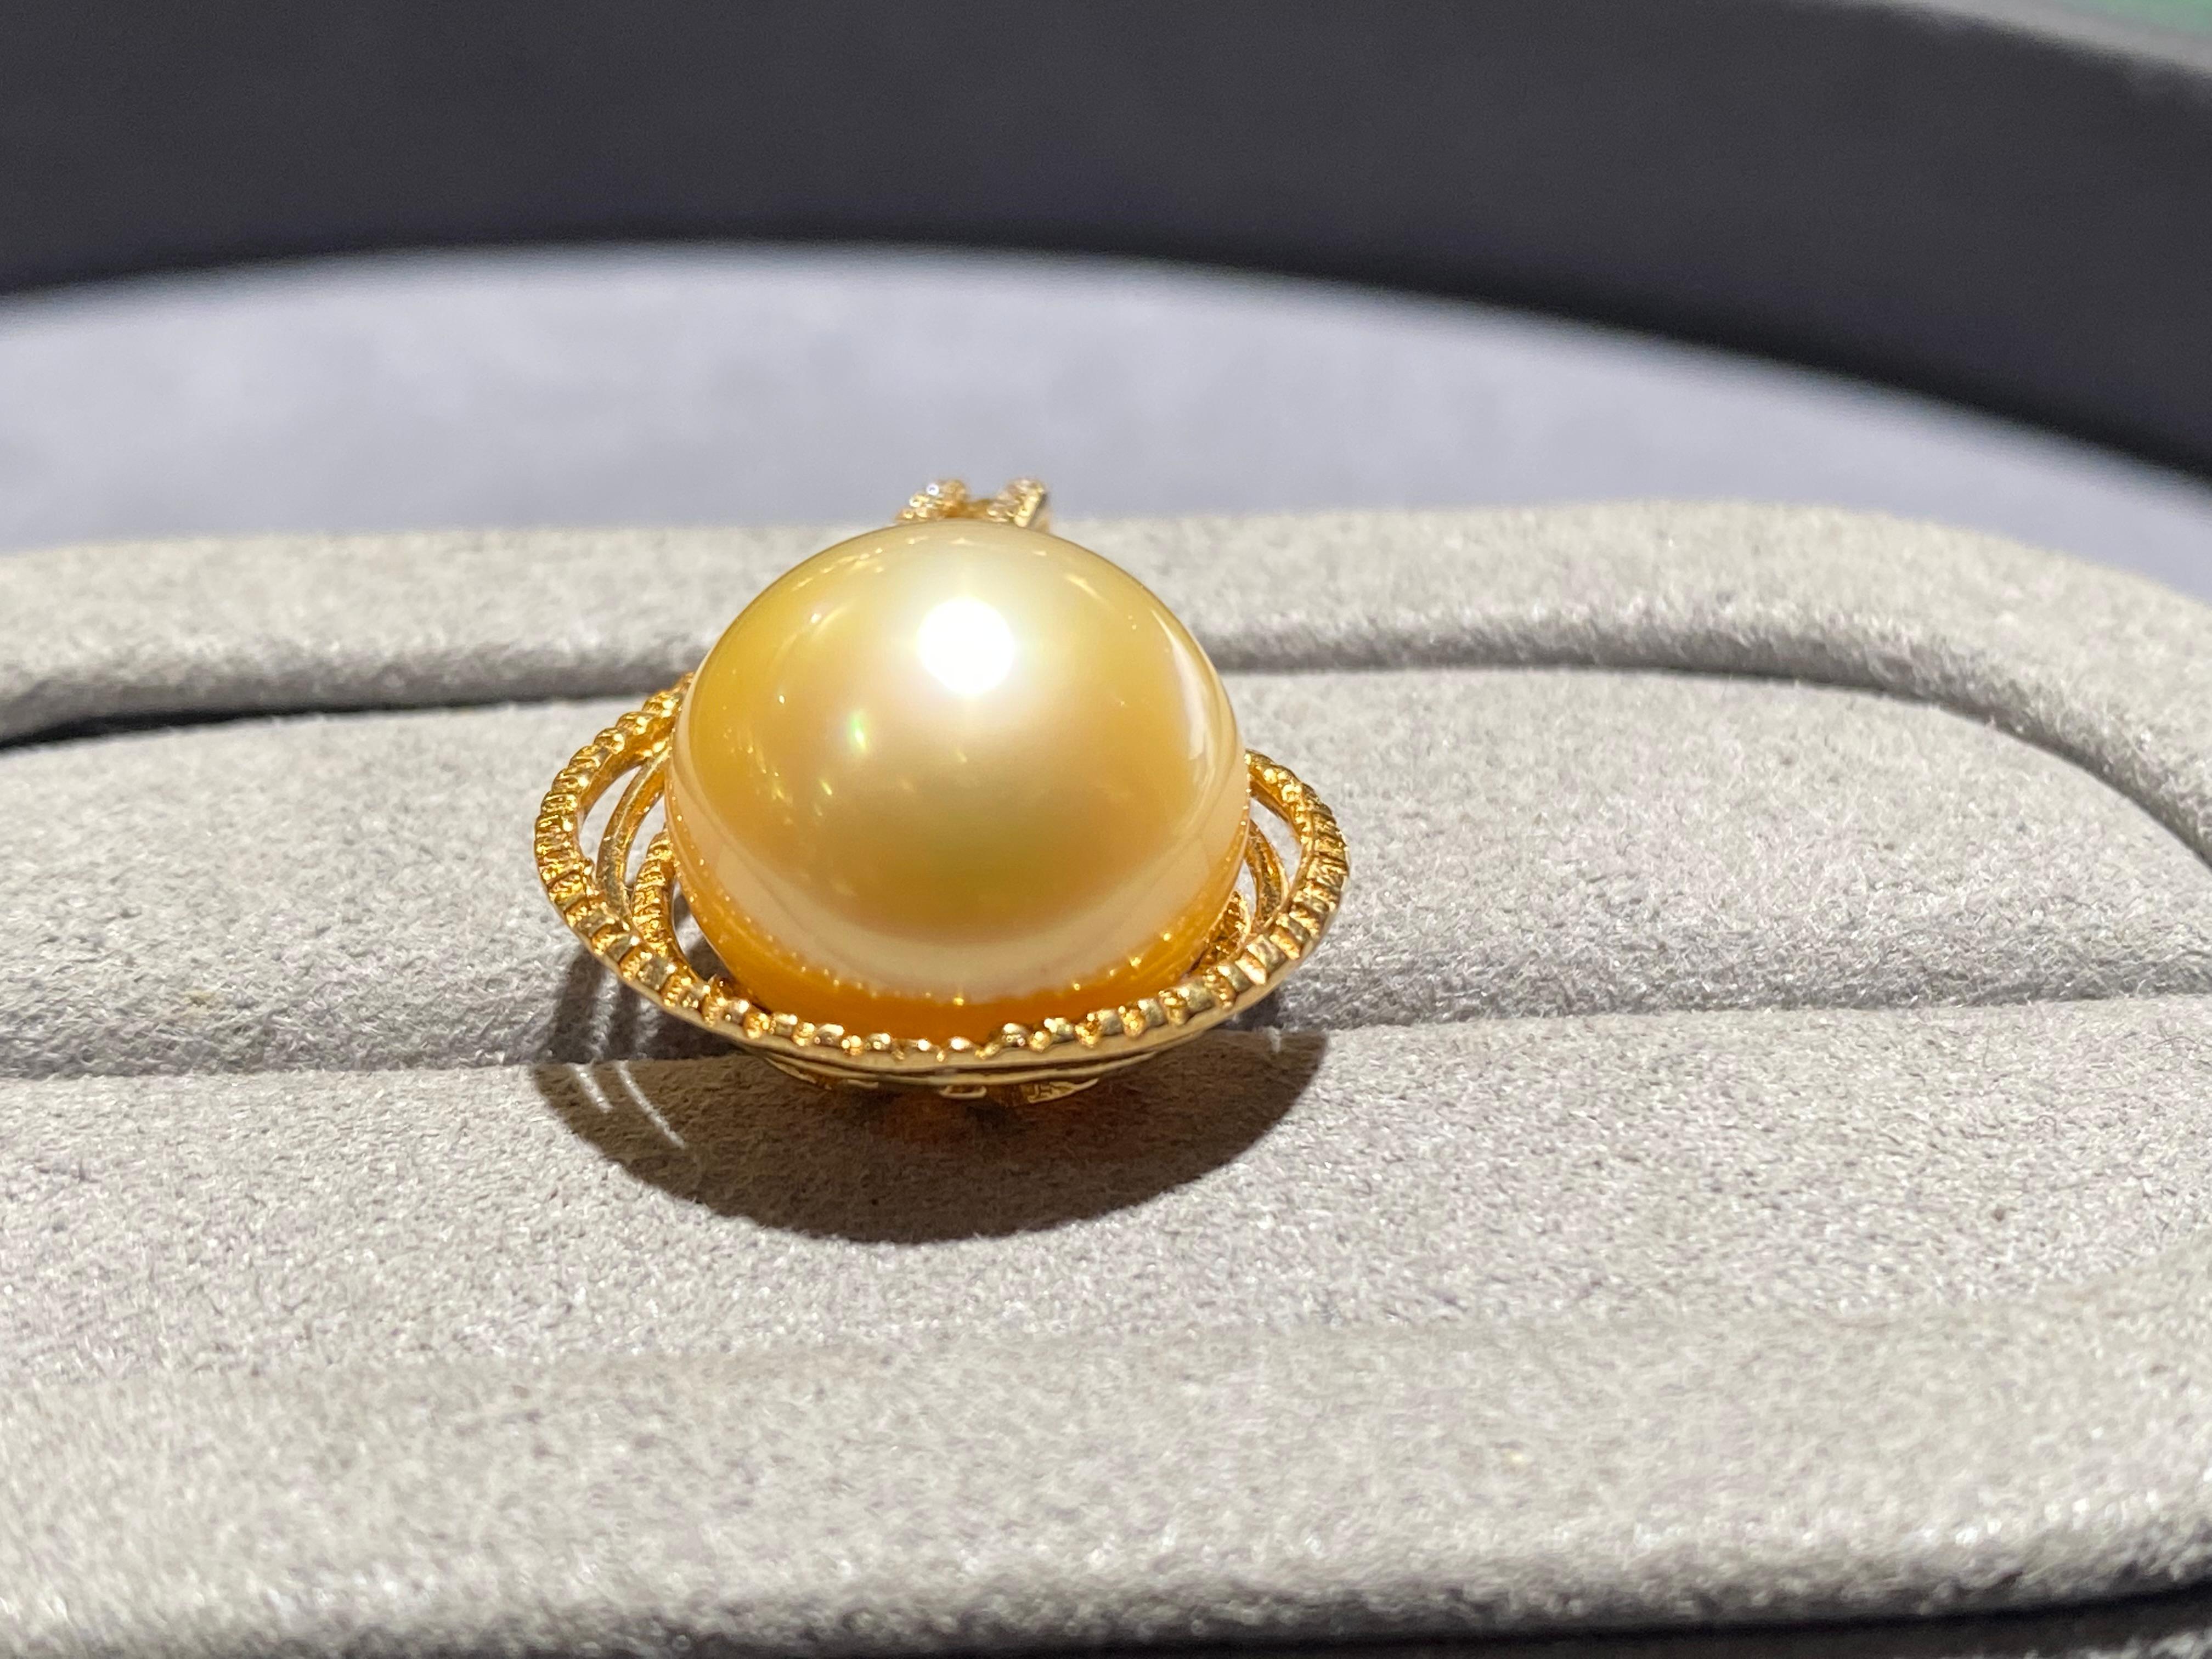 Pendentif en or jaune 18k composé d'une perle des mers du sud de 13,2 mm de diamètre et d'un diamant. Le pendentif ressemble à une goutte de pluie et la perle des mers du Sud se trouve au bas du pendentif. Des microdiamants sont sertis près de la